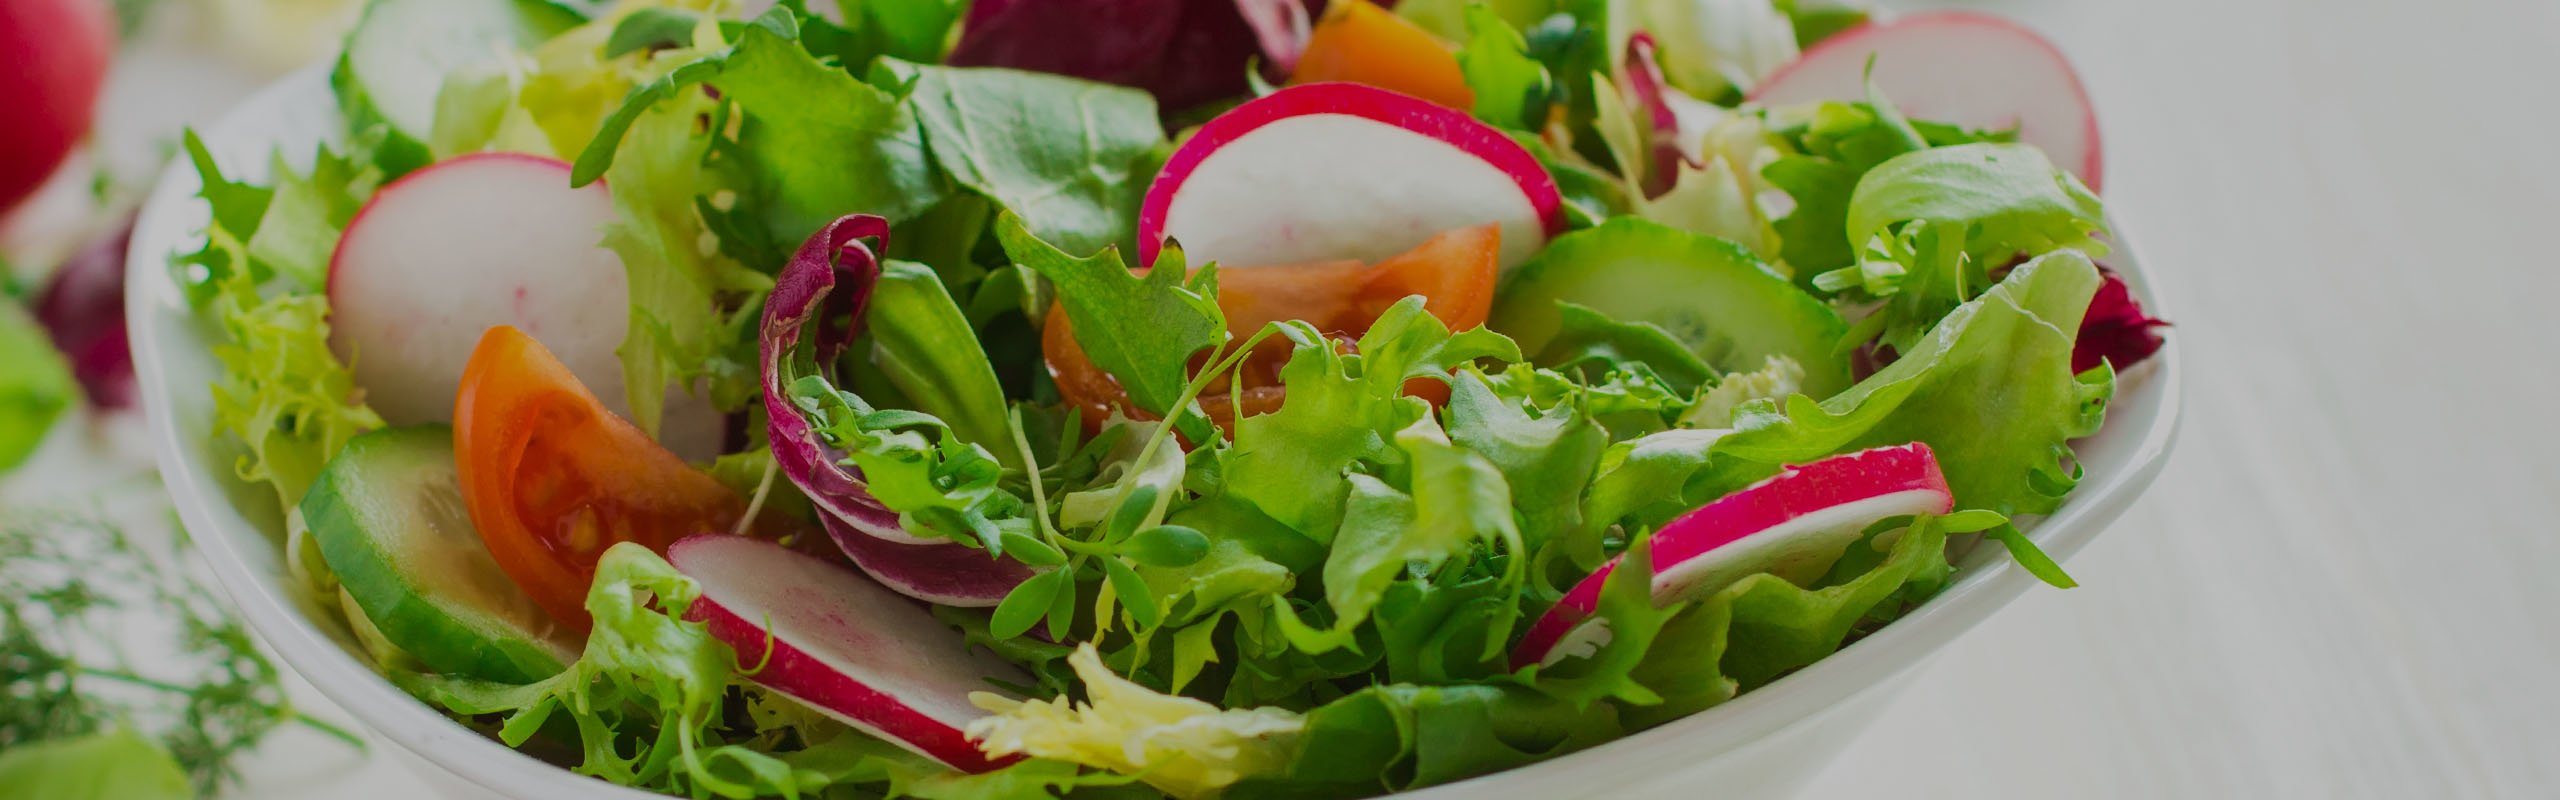 Salat mit Bautzner Tafelessig